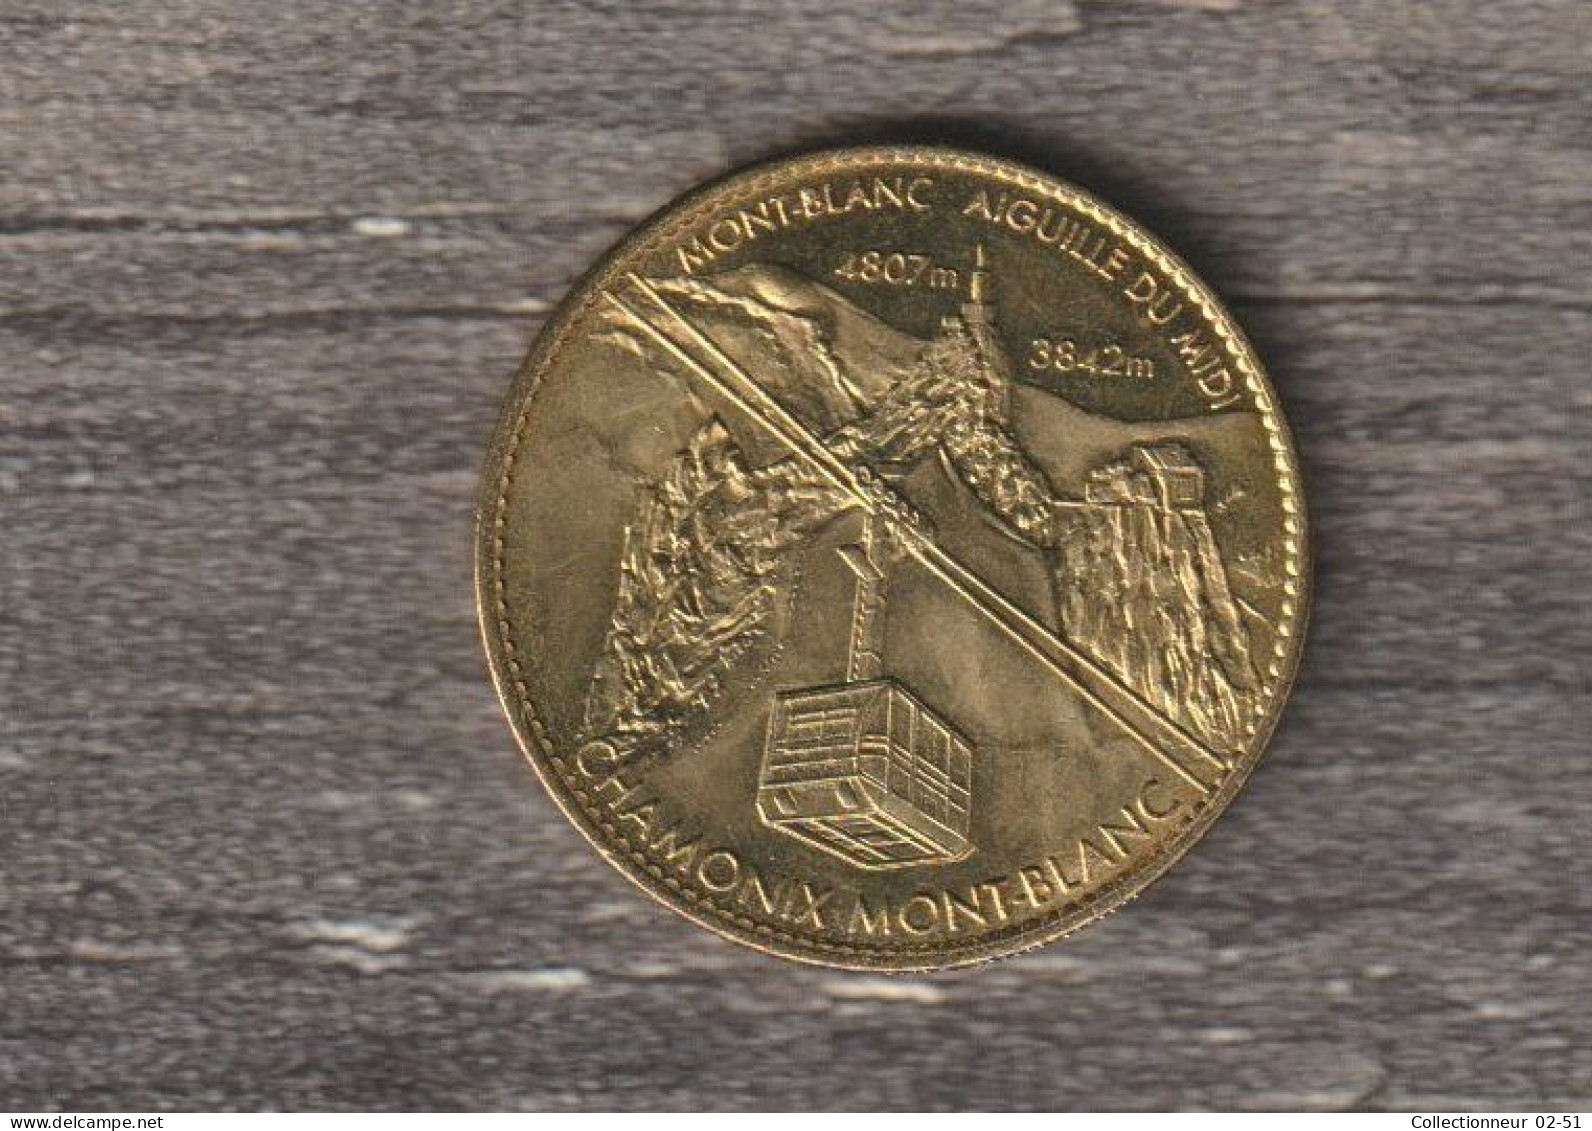 Monnaie Arthus Bertrand : Mont-Blanc Aiguille Du Midi - 2010 - 2010